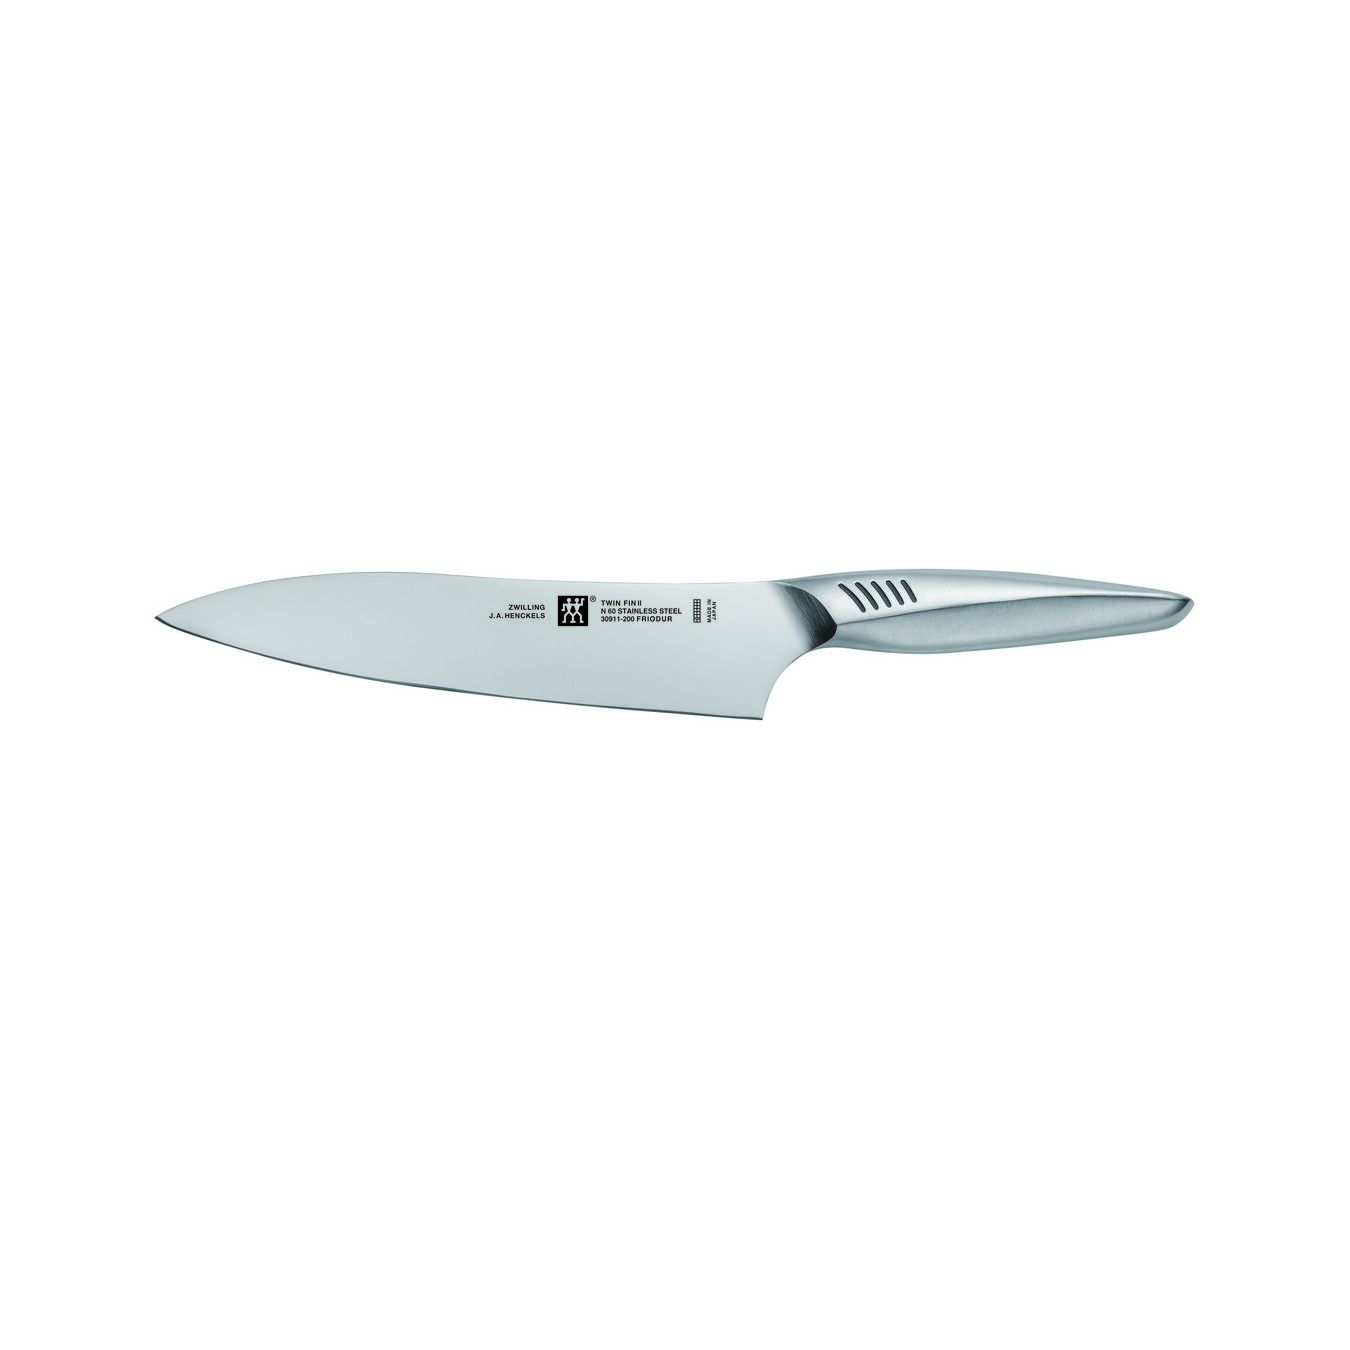 Cuchillo de chef 20 cm, Acero inoxidable,,large 1